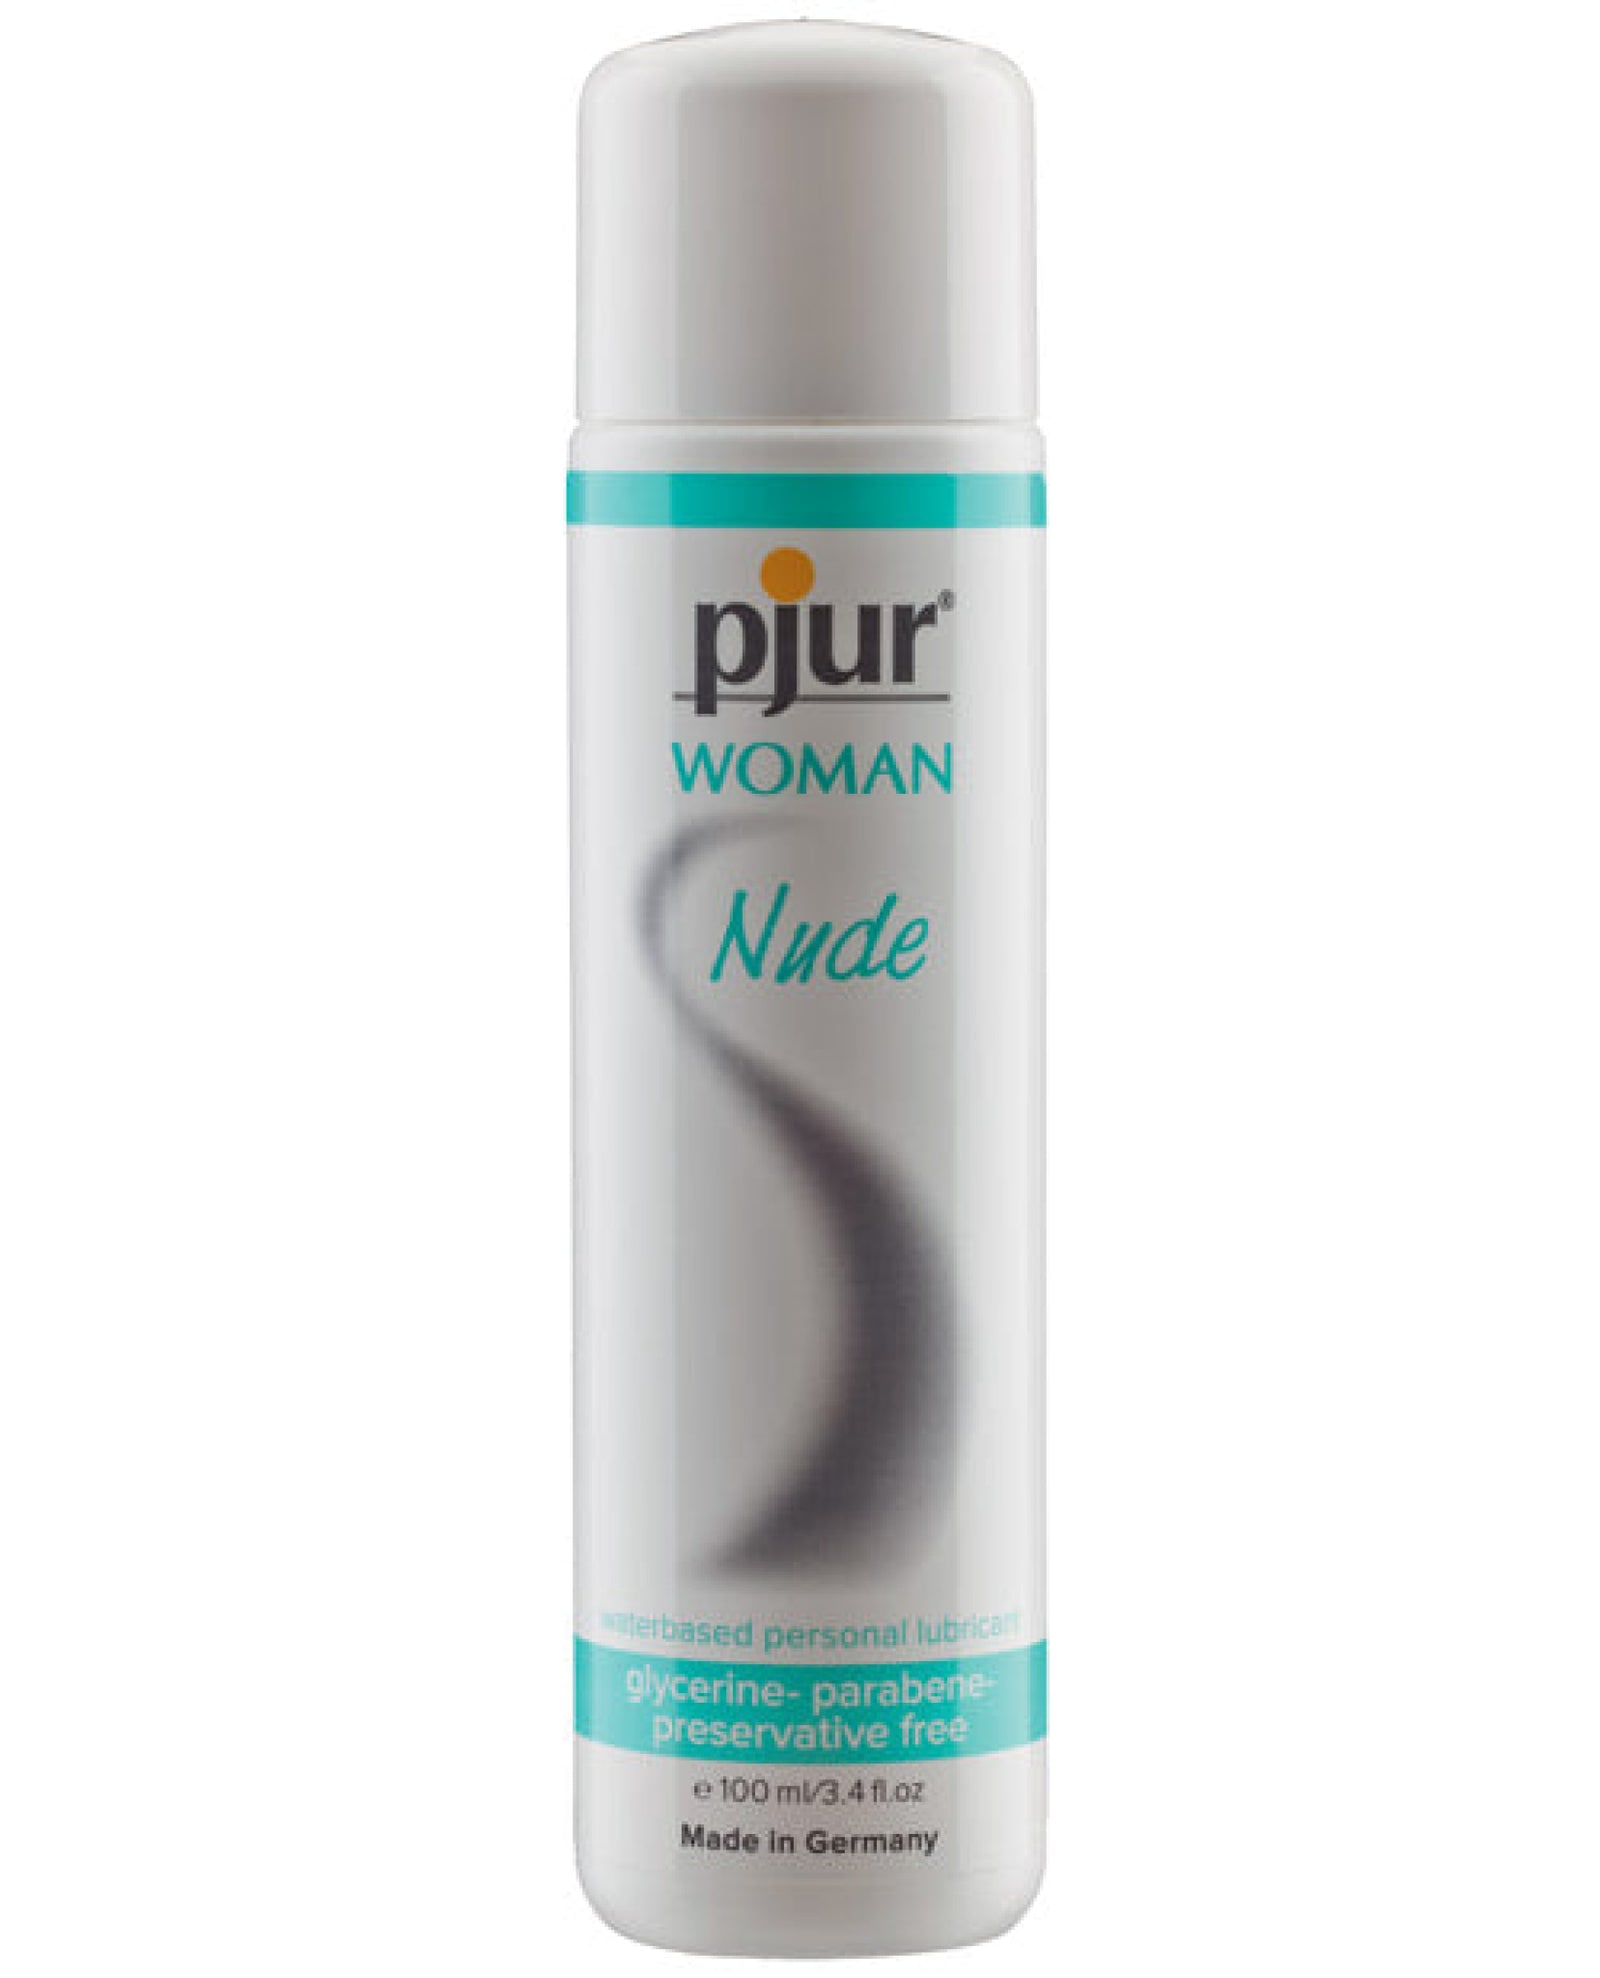 Pjur Woman Nude Water Based Personal Lubricant - 100 Ml Pjur